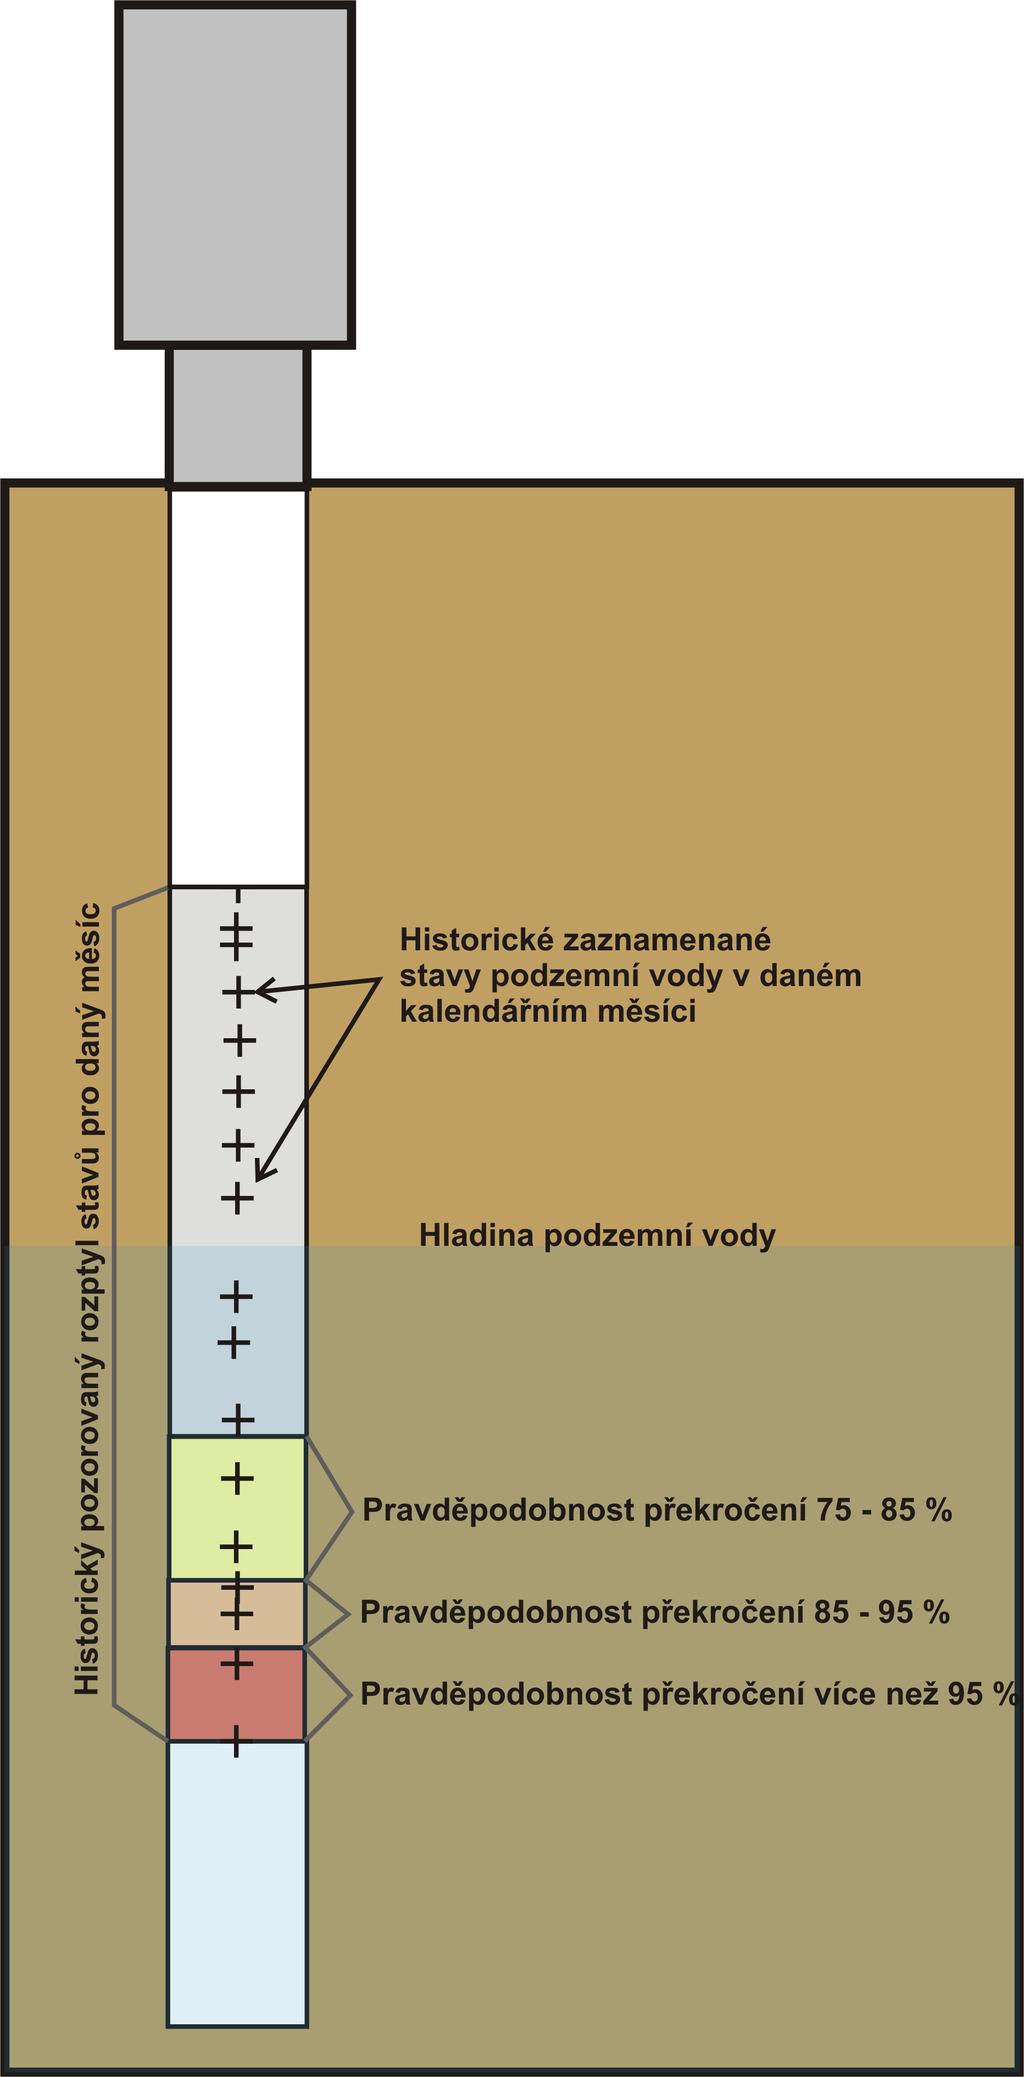 E. Podzemní vody V podzemních vodách je stav sucha definován pomocí pravděpodobnosti výskytu dané hladiny ve vrtu v daném kalendářním měsíci.